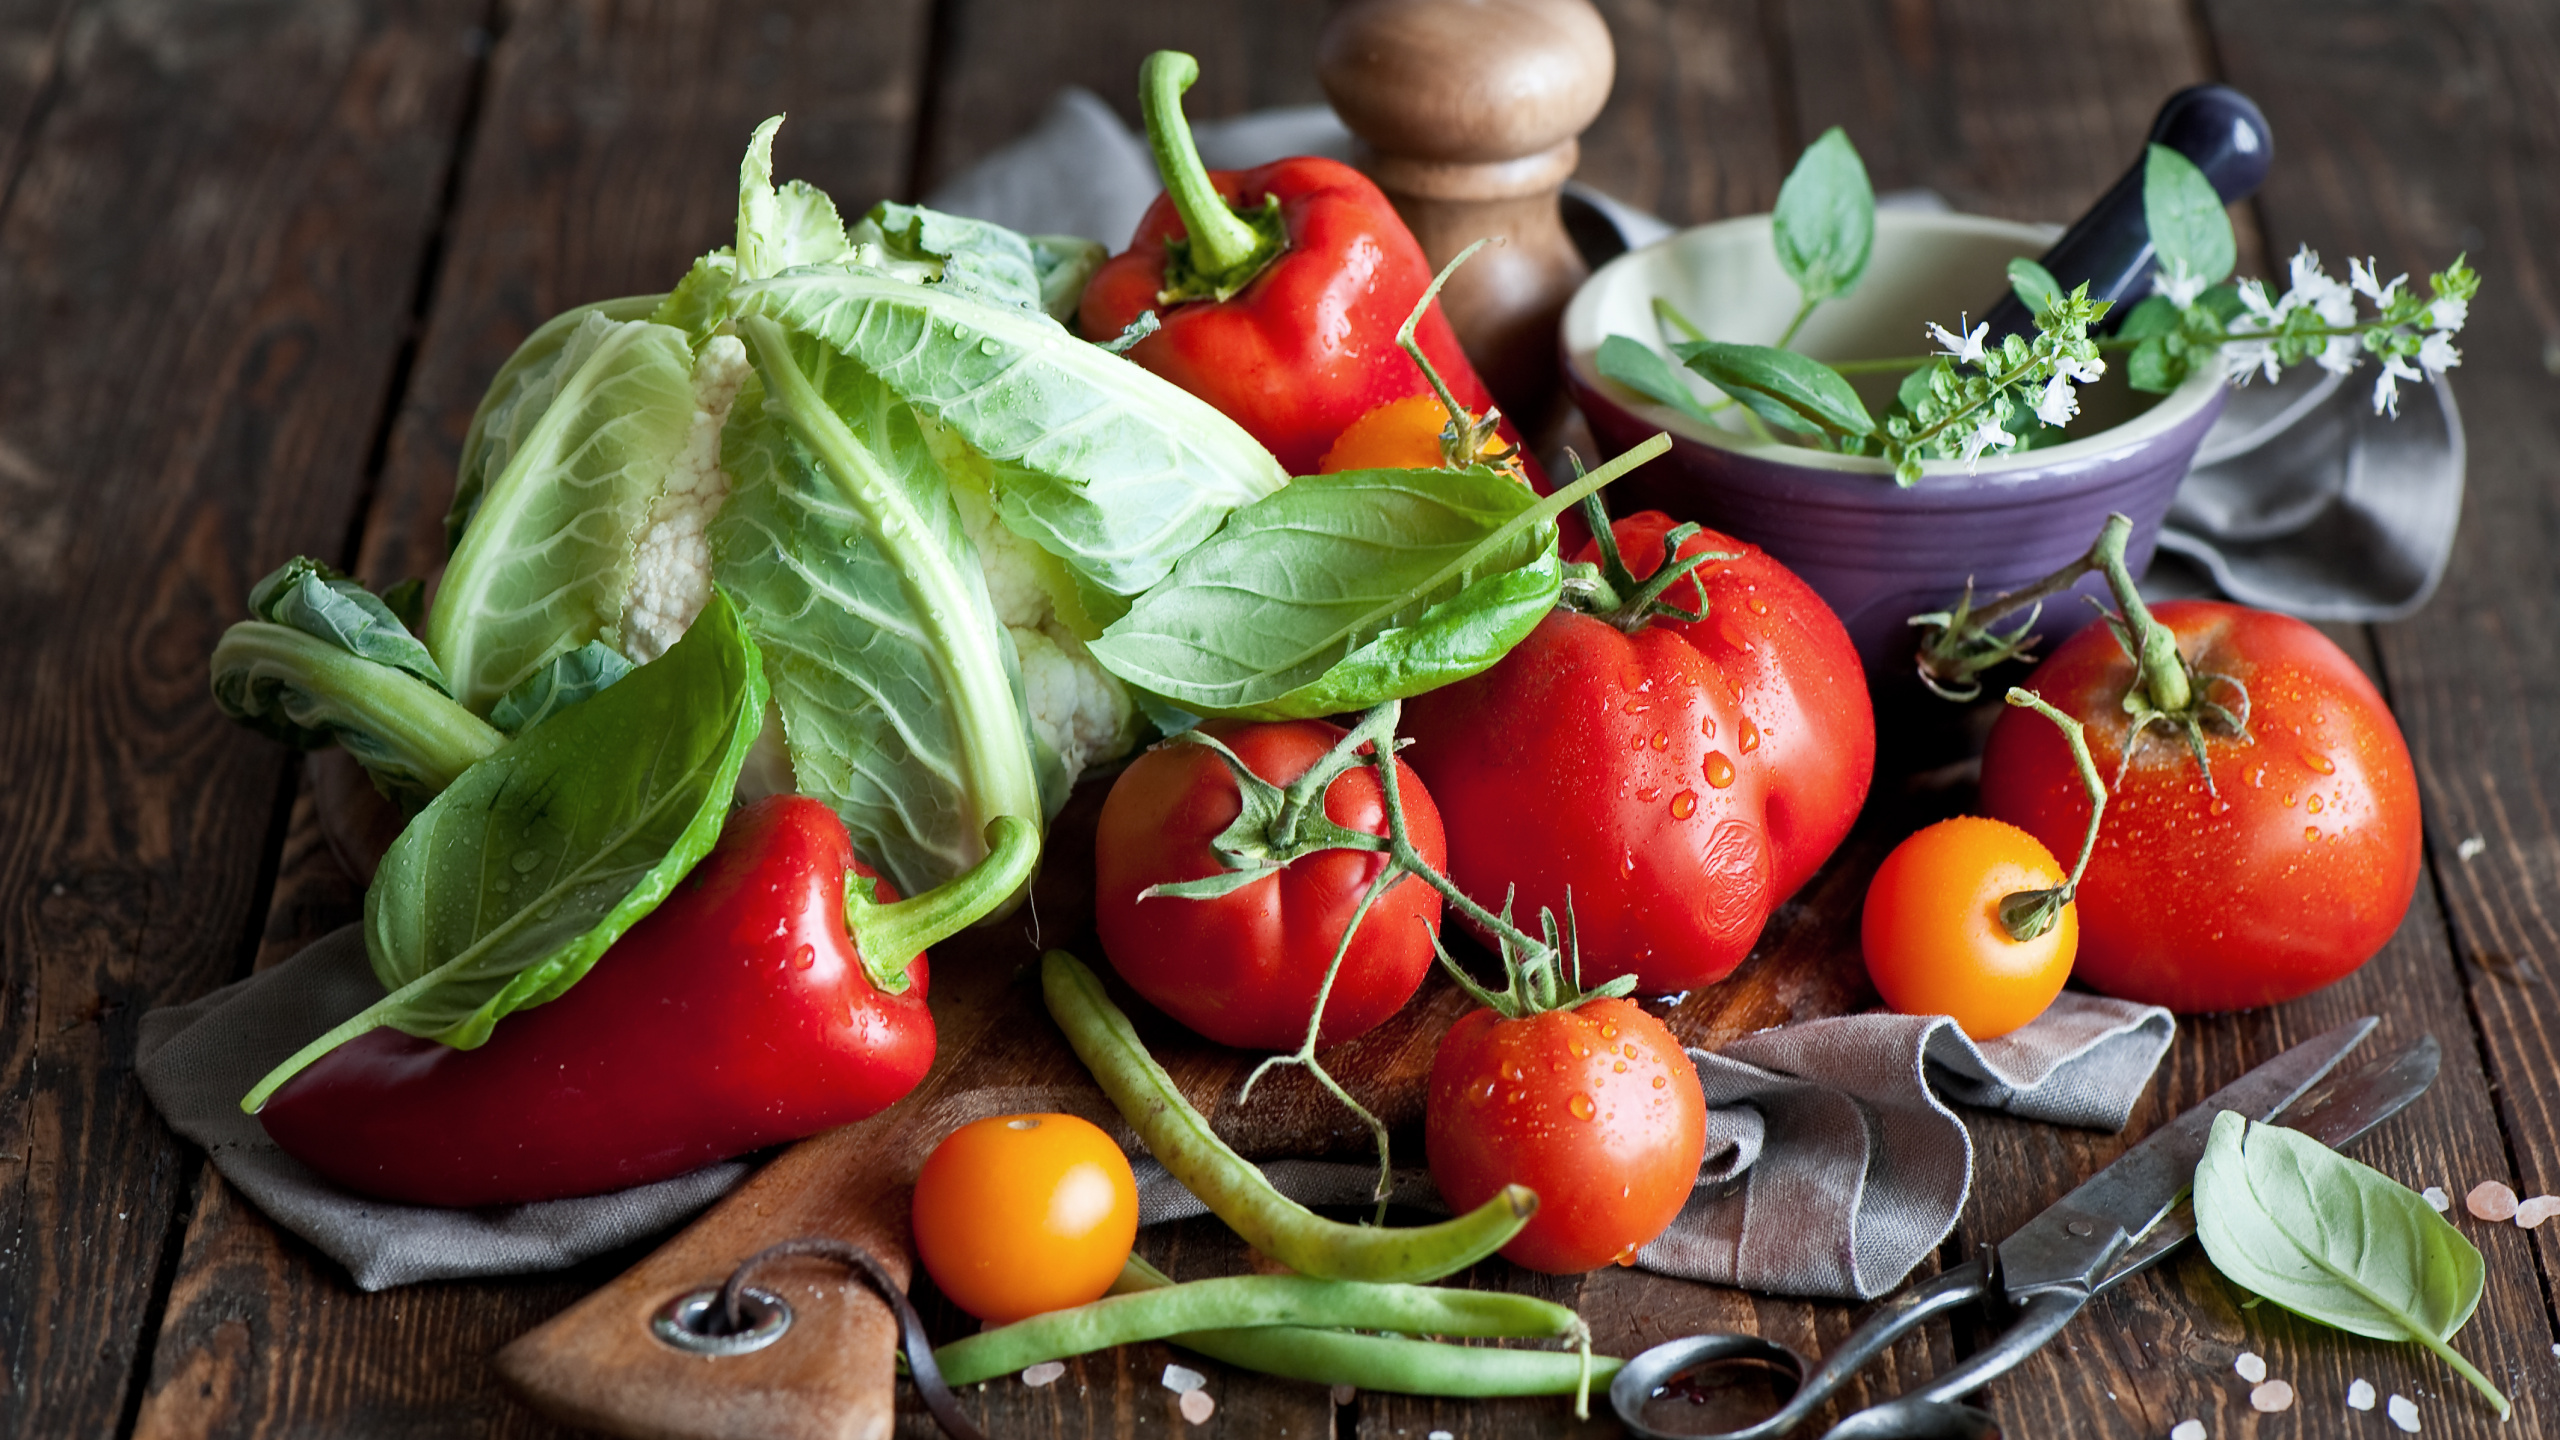 天然的食物, 食品, 番茄, 生菜, 白菜 壁纸 2560x1440 允许